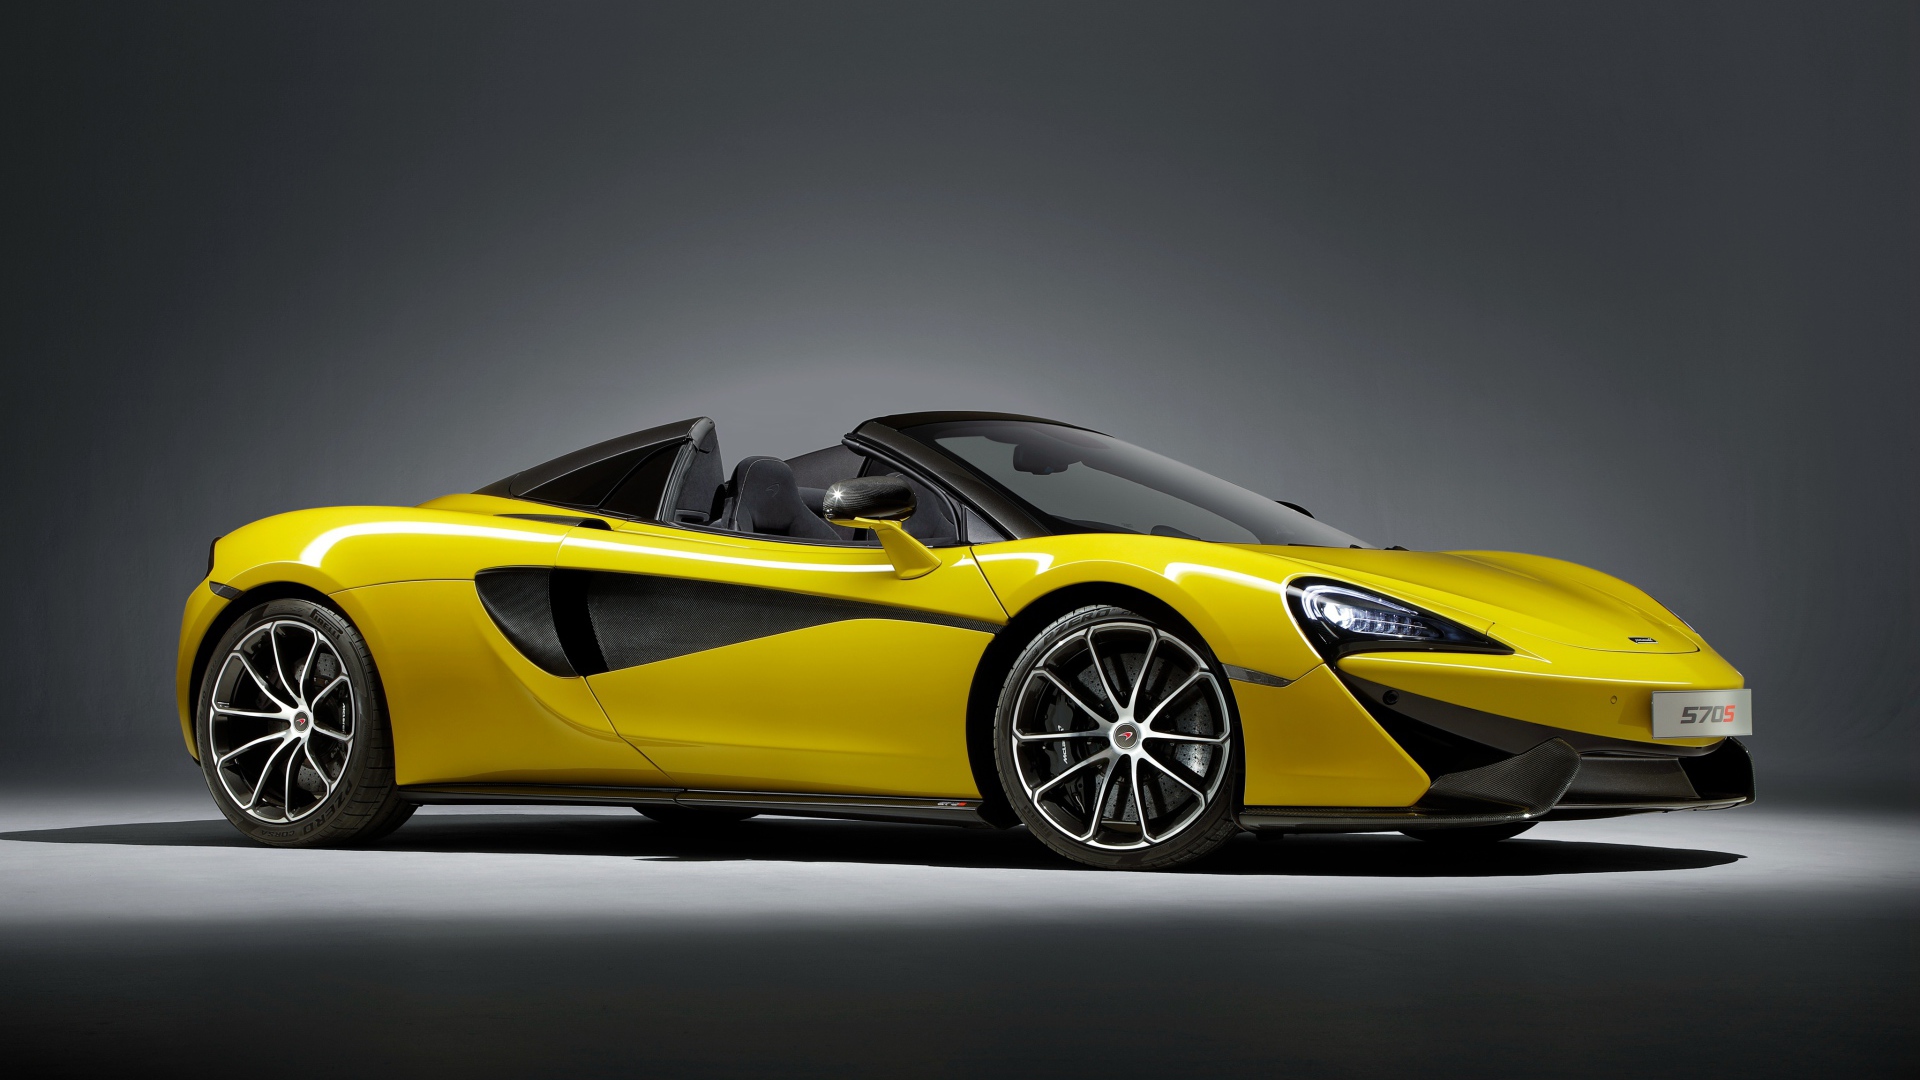 Стильный спортивный автомобиль McLaren 570S желтого цвета